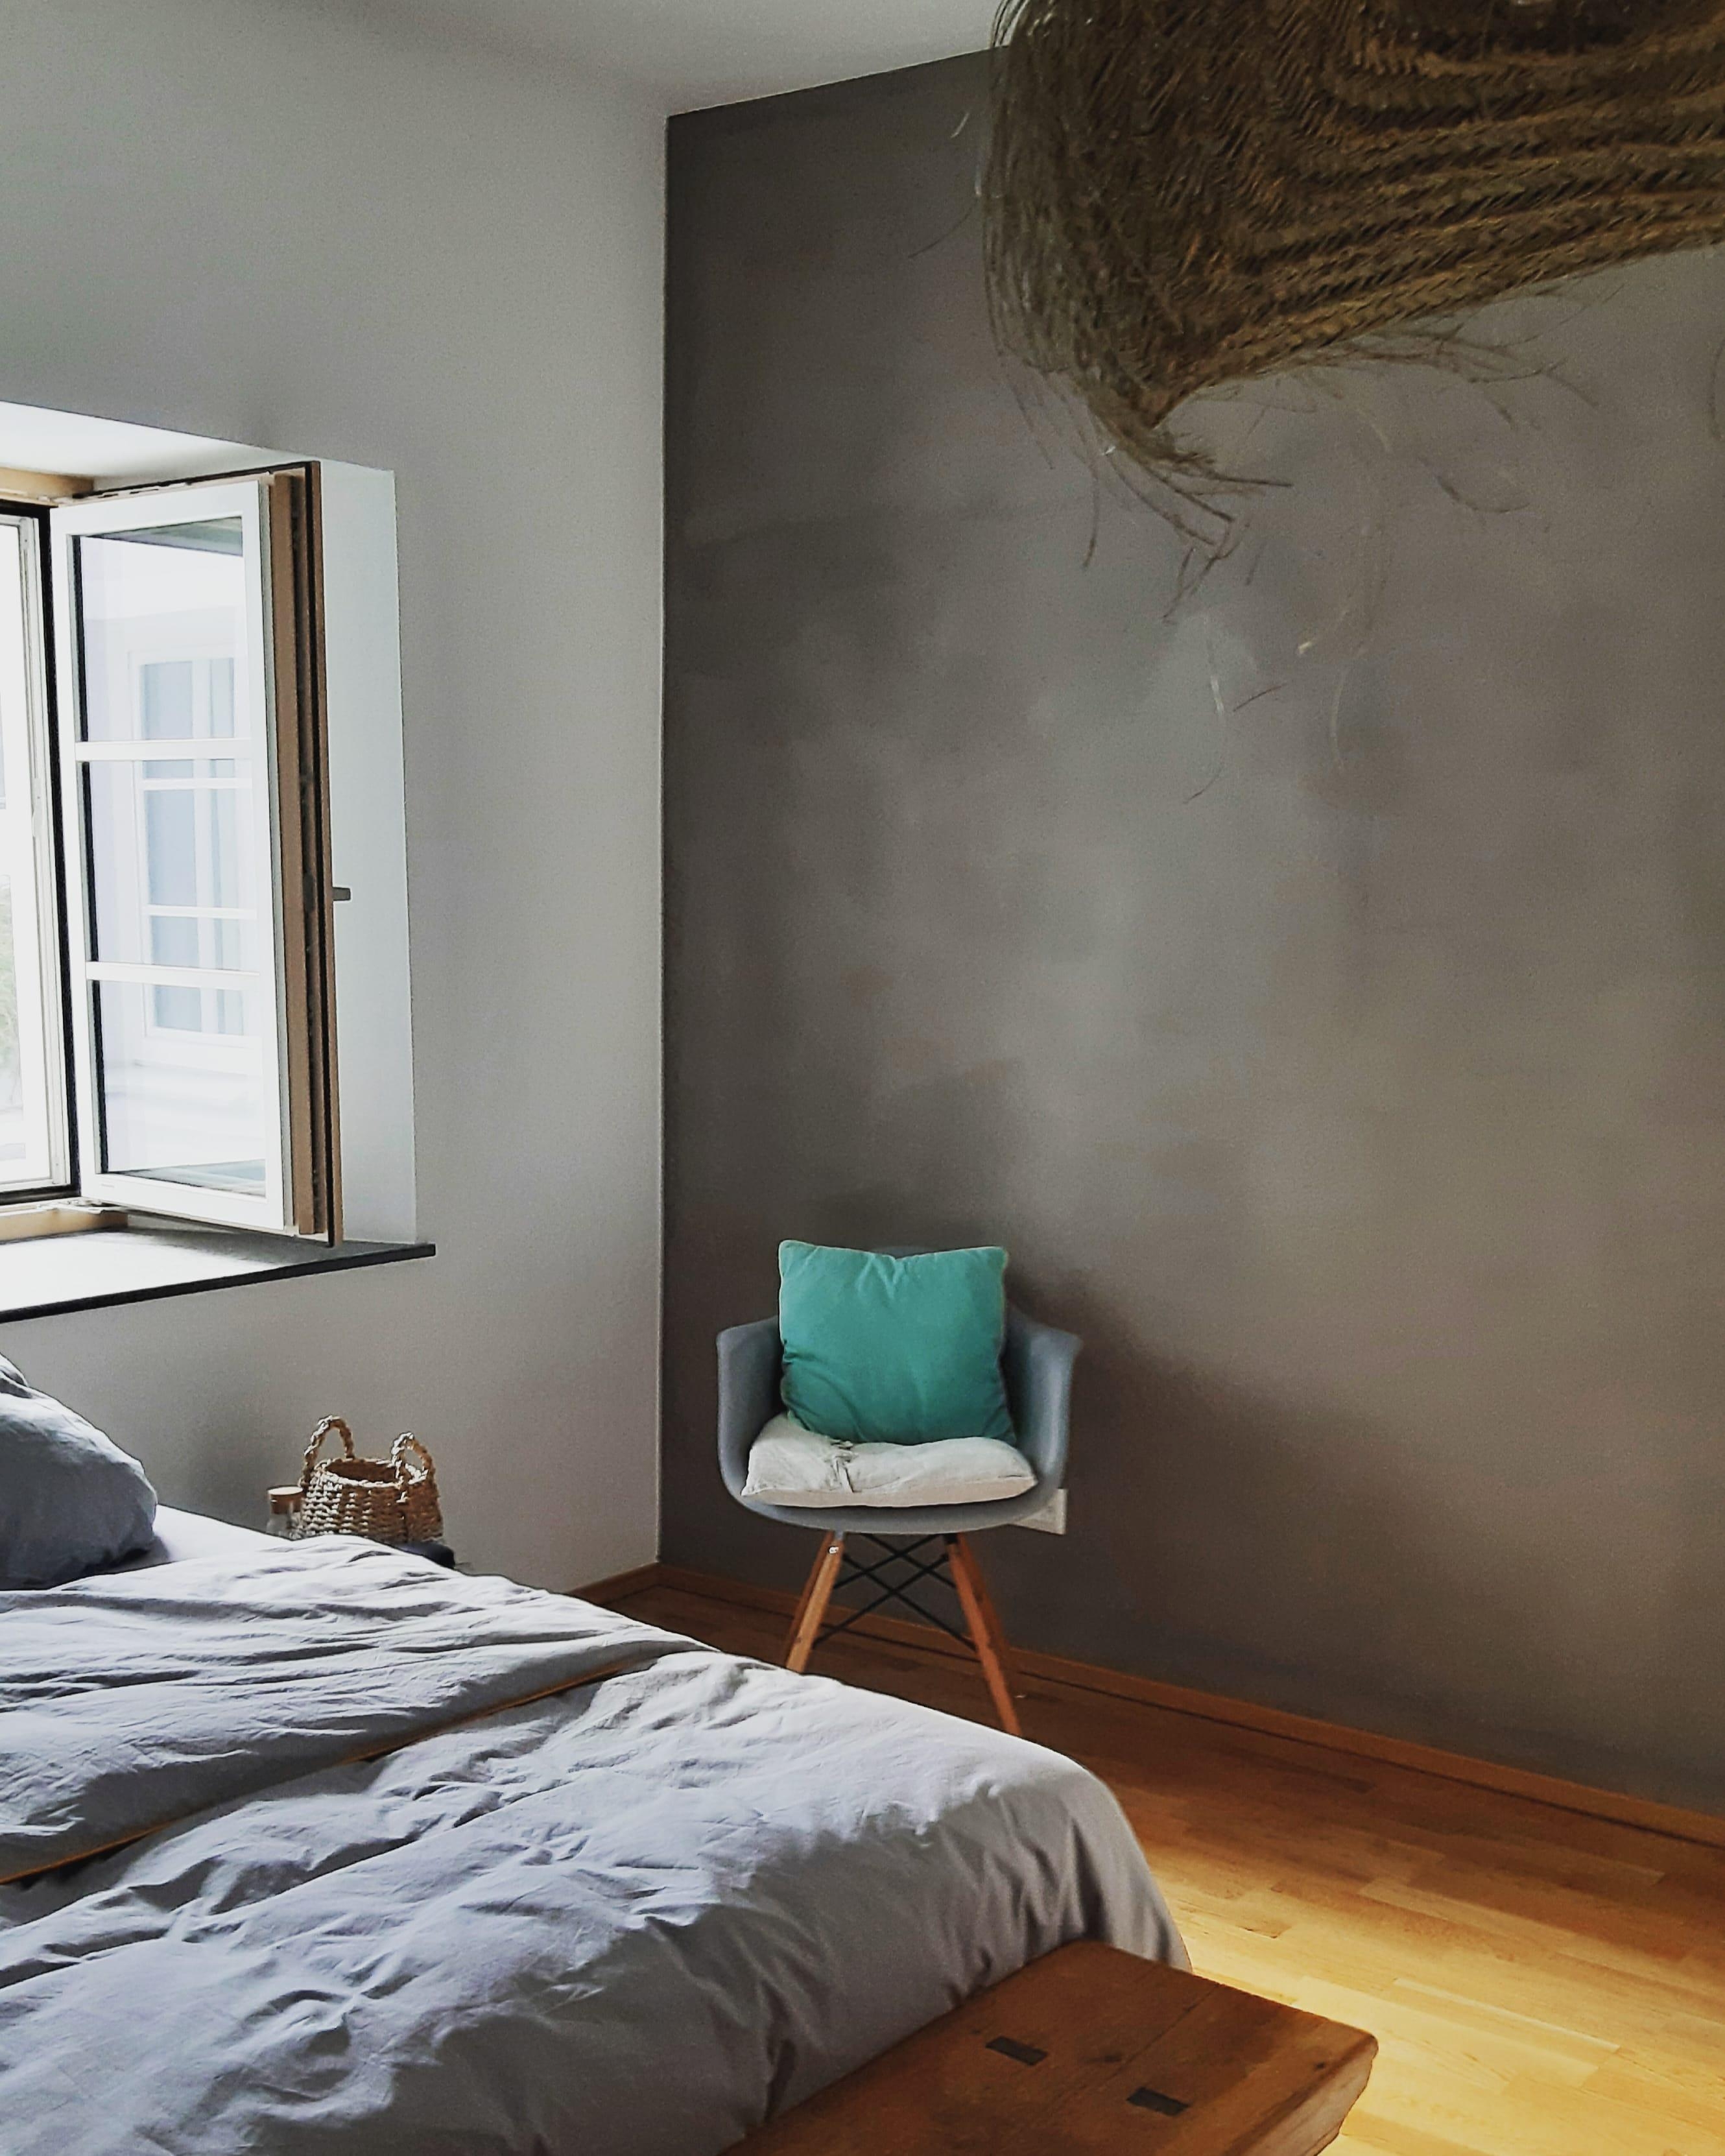 #schlafzimmer #couchliebt #bedroom #neuefarbe #schönerwohnen #manhattan